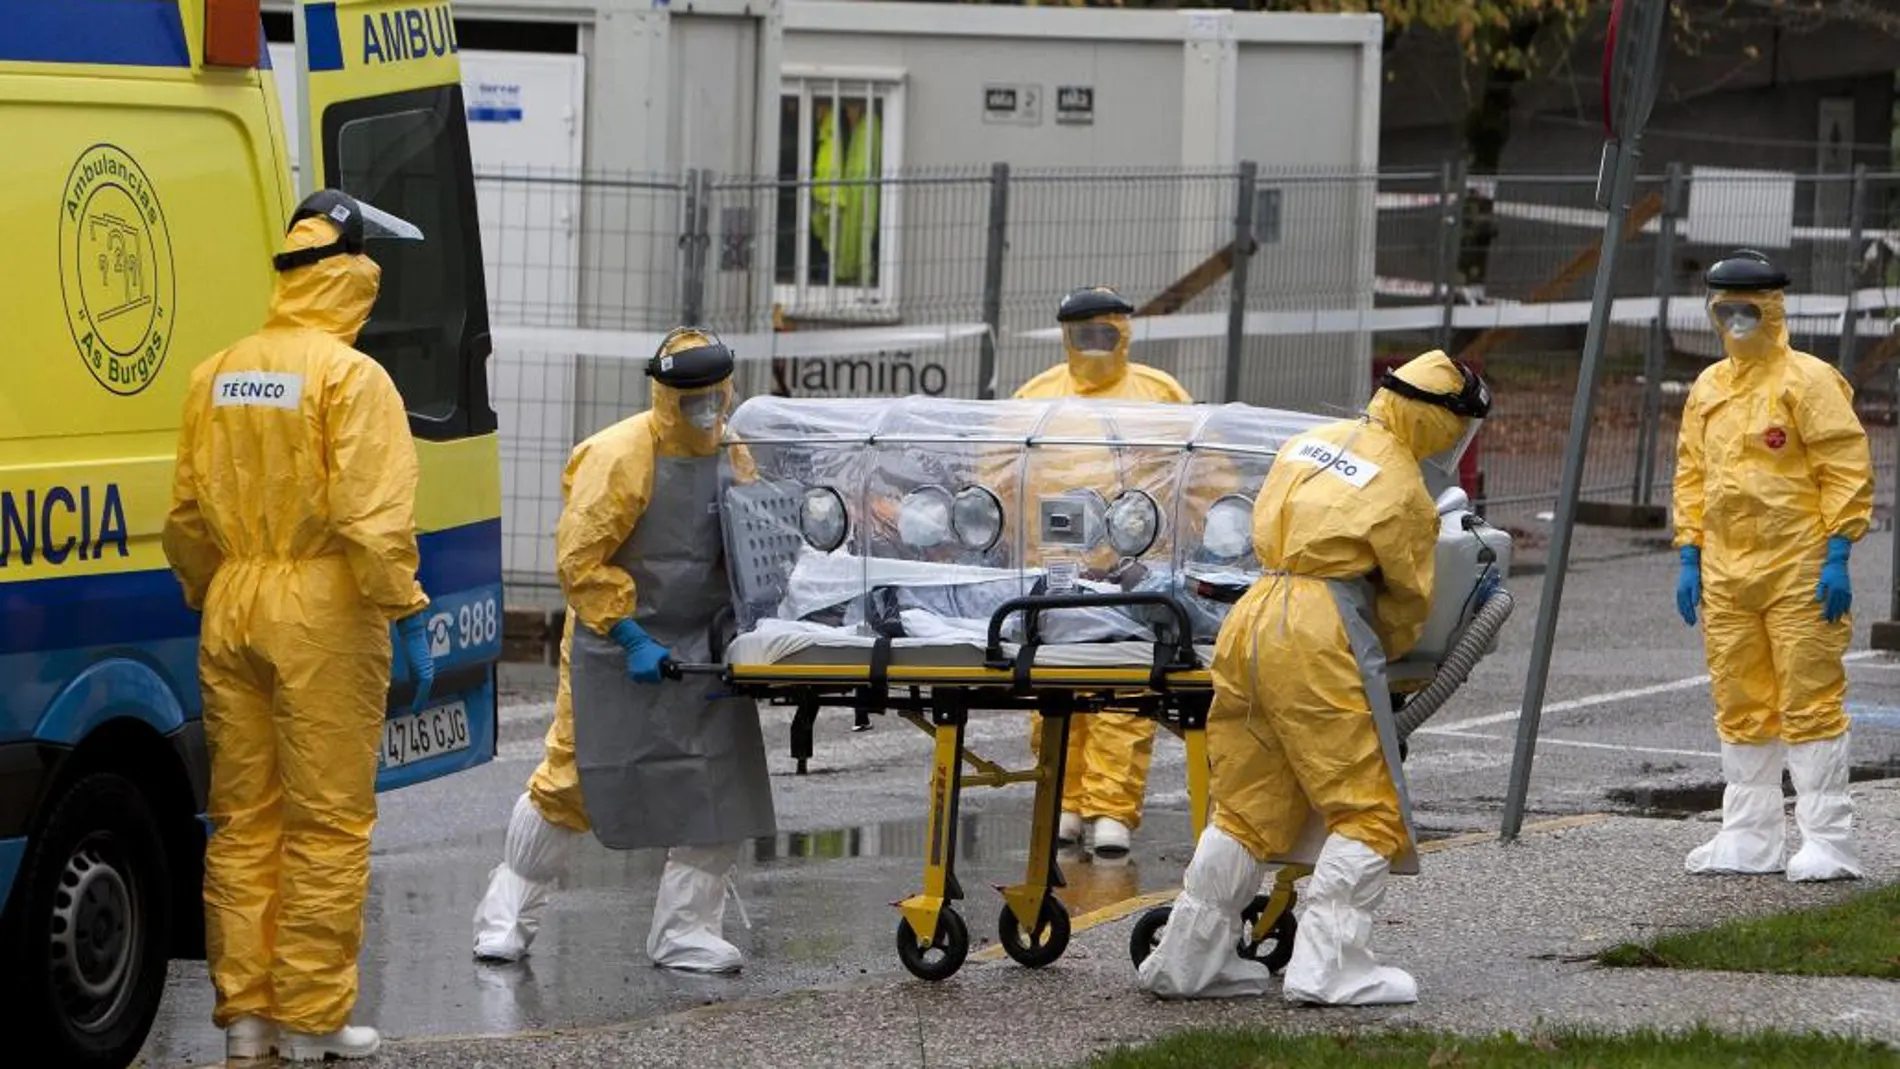 Traslado desde La Coruña a Vigo del hombre posible portador de ébola ha llegado al hospital Meixoeiro